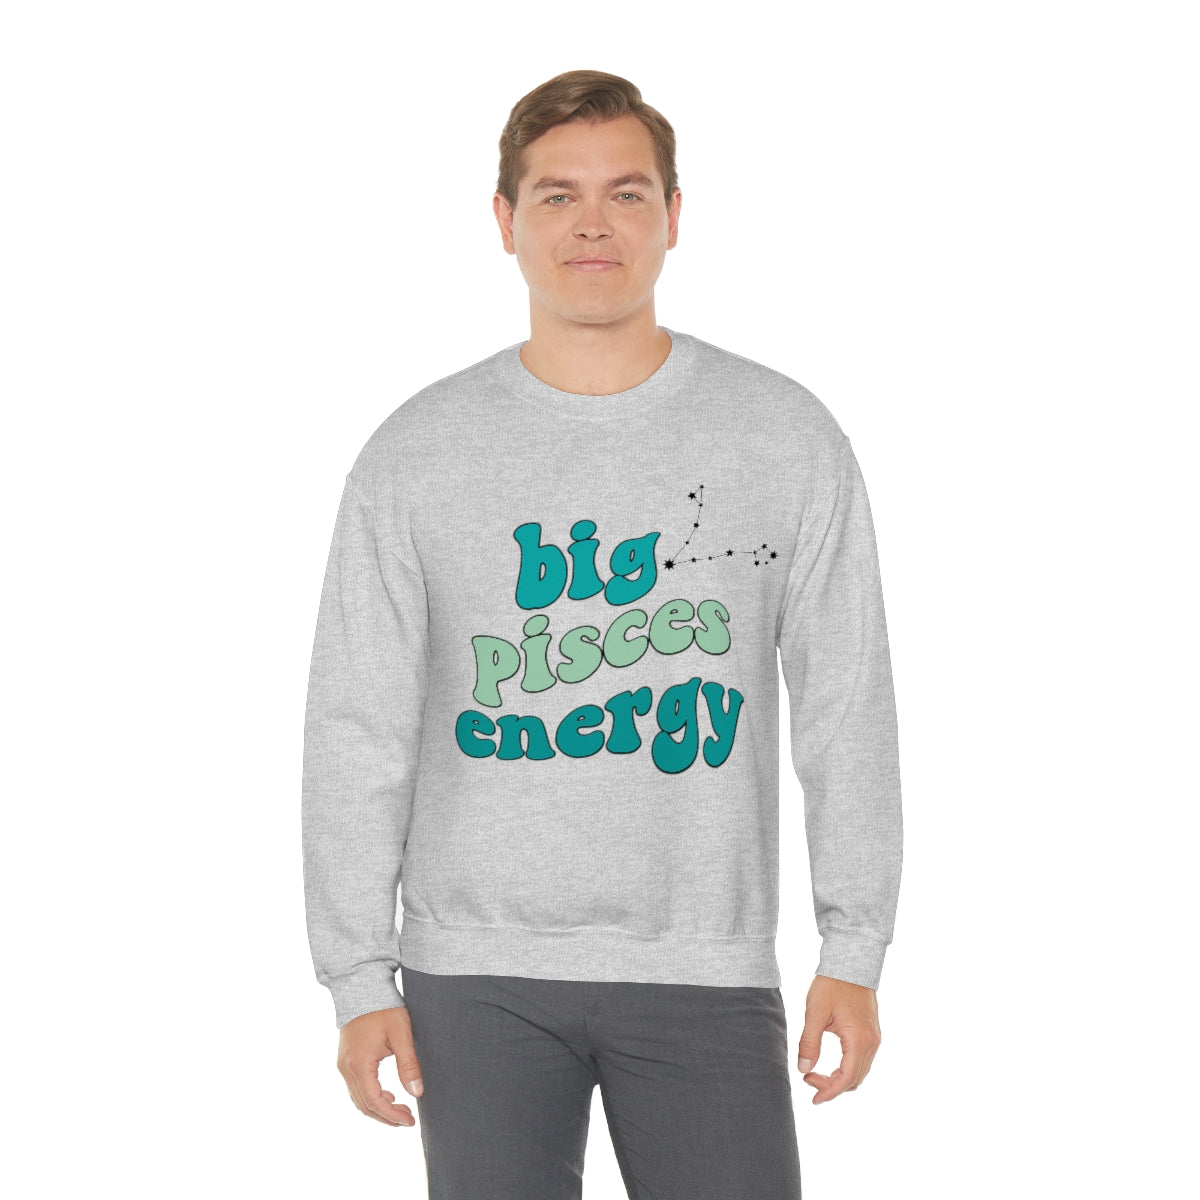 Pisces Sweatshirt, Big Pisces Energy Sweatshirt, Gift for Pisces, Astrology lover sweatshirt, Gift for Astrology Lover, Zodiac sweater